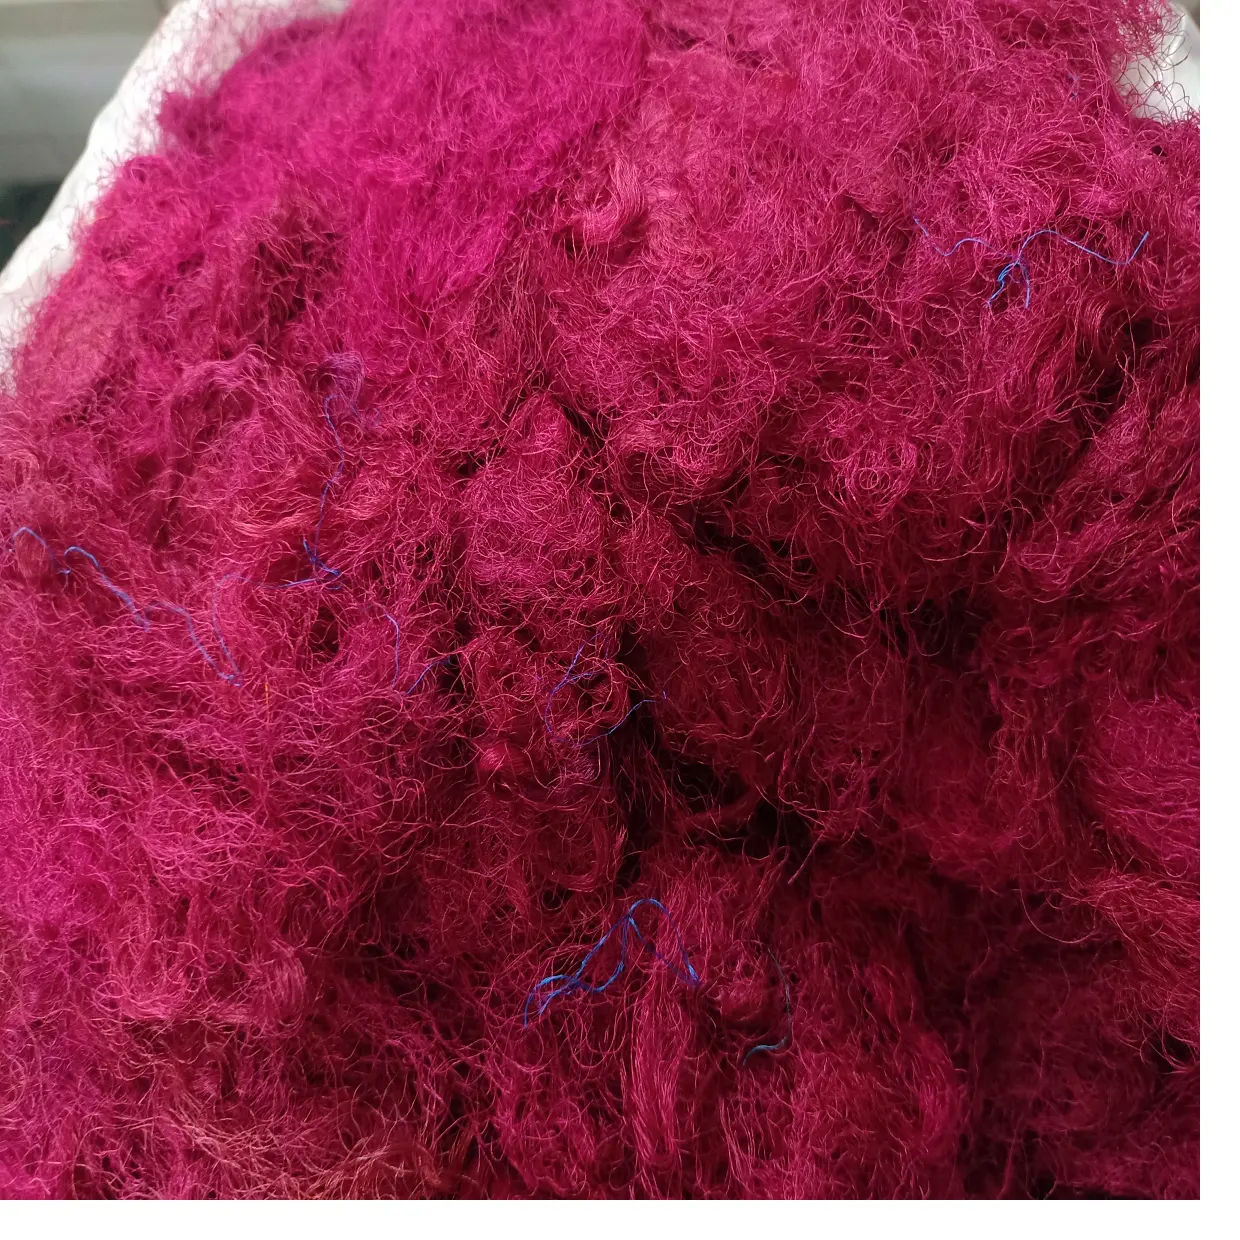 Sari шелковые волокна для отходов доступны в индивидуальных окрашенных разных цветах, изготовленные из переработанных шелковых волокон, идеально подходят для текстильных спиннеров